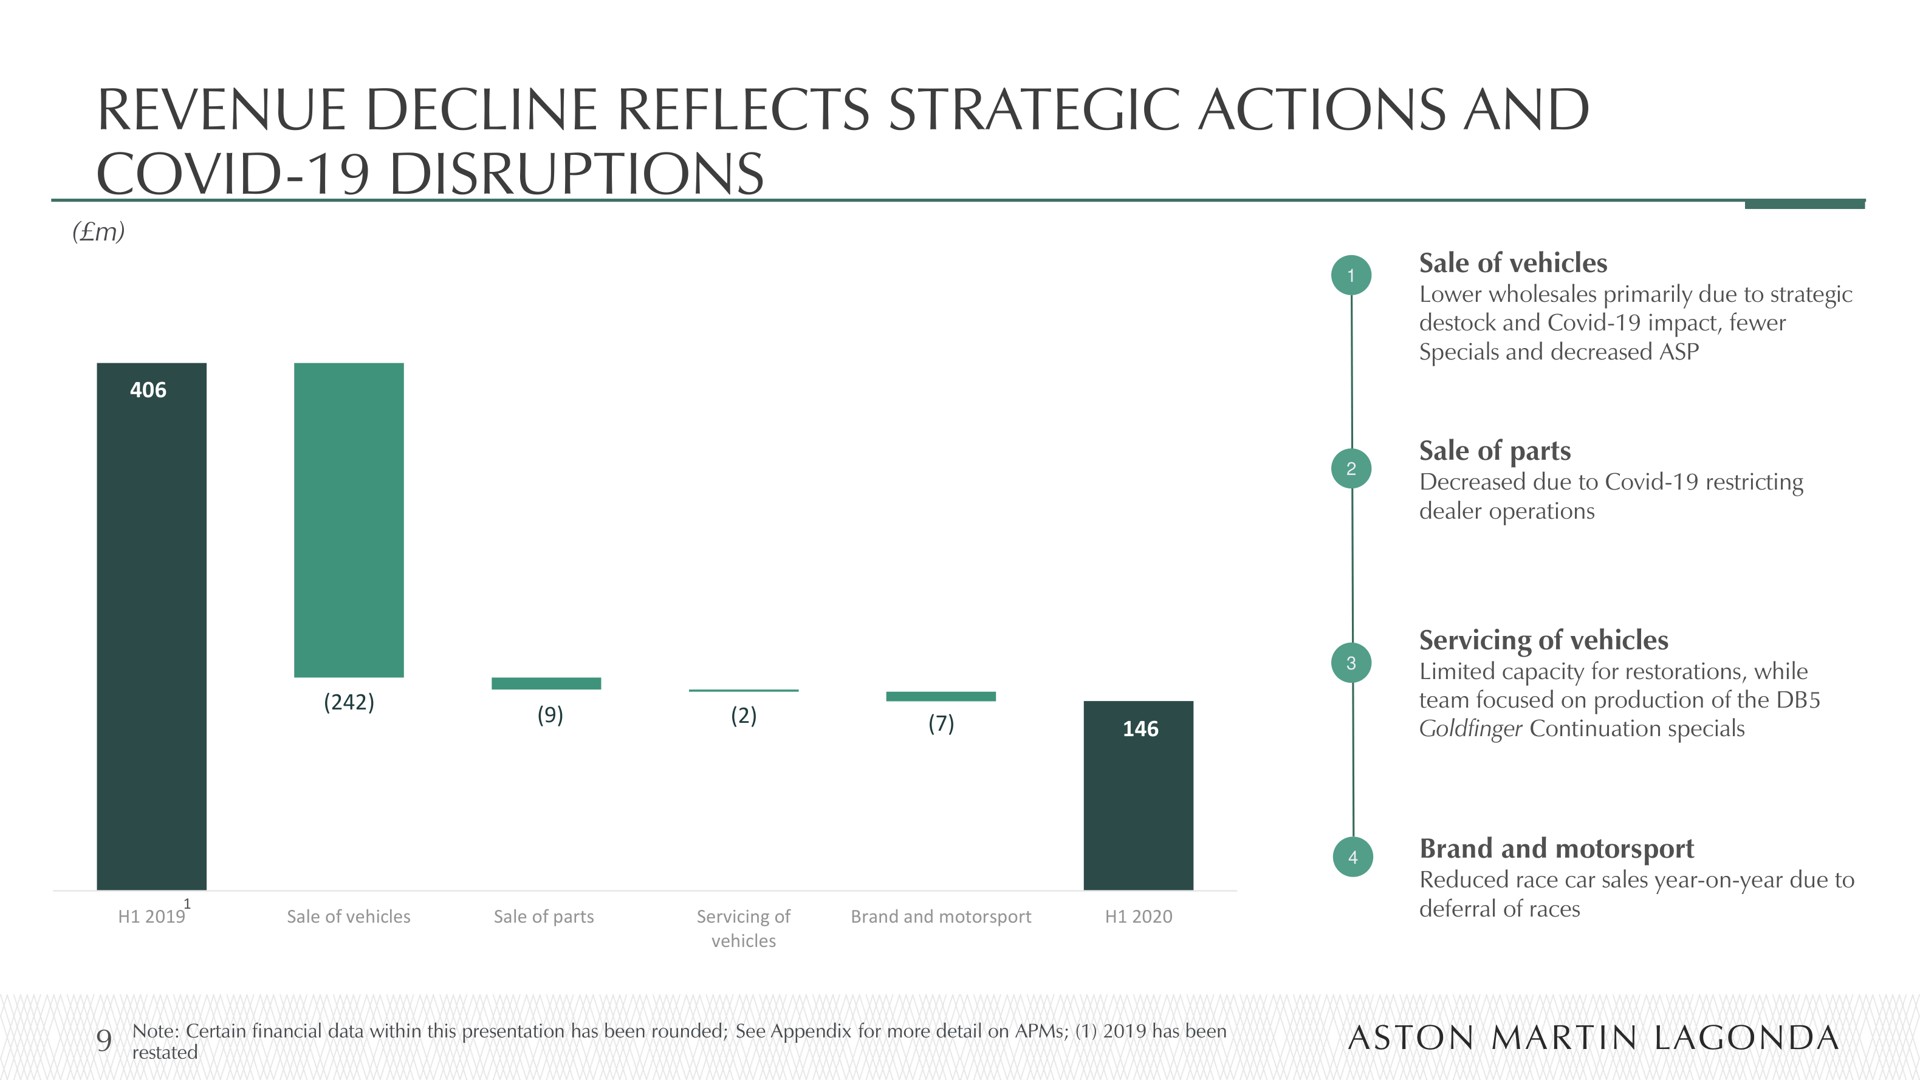 revenue decline reflects strategic actions and covid disruptions | Aston Martin Lagonda